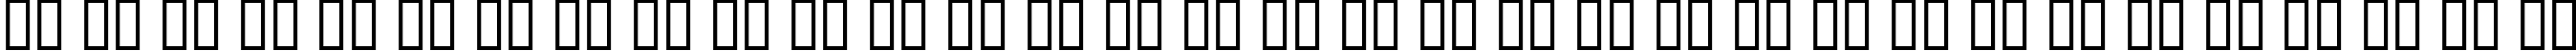 Пример написания русского алфавита шрифтом Elgethy Est Condensed